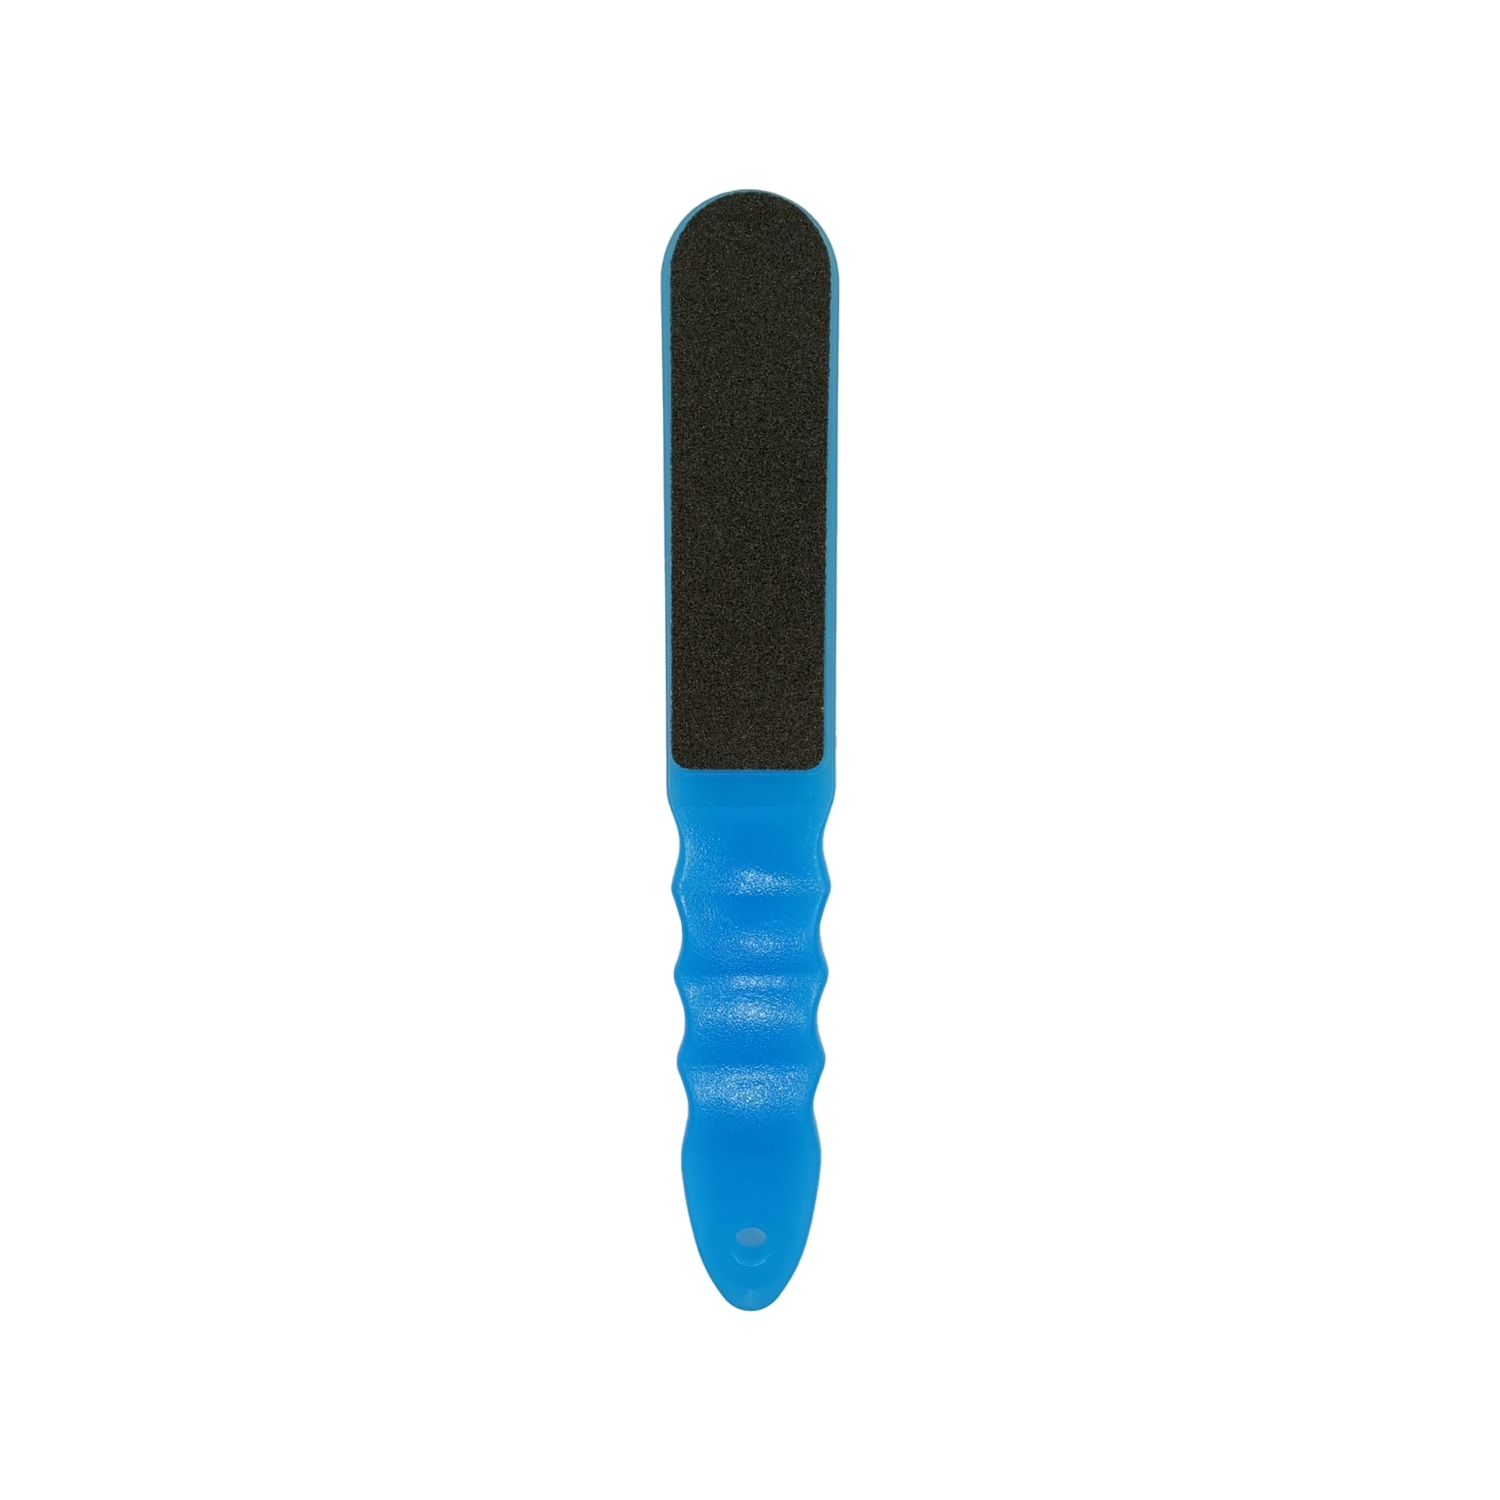 Claris Topuk Törpüsü Mavi No:700 C-48001